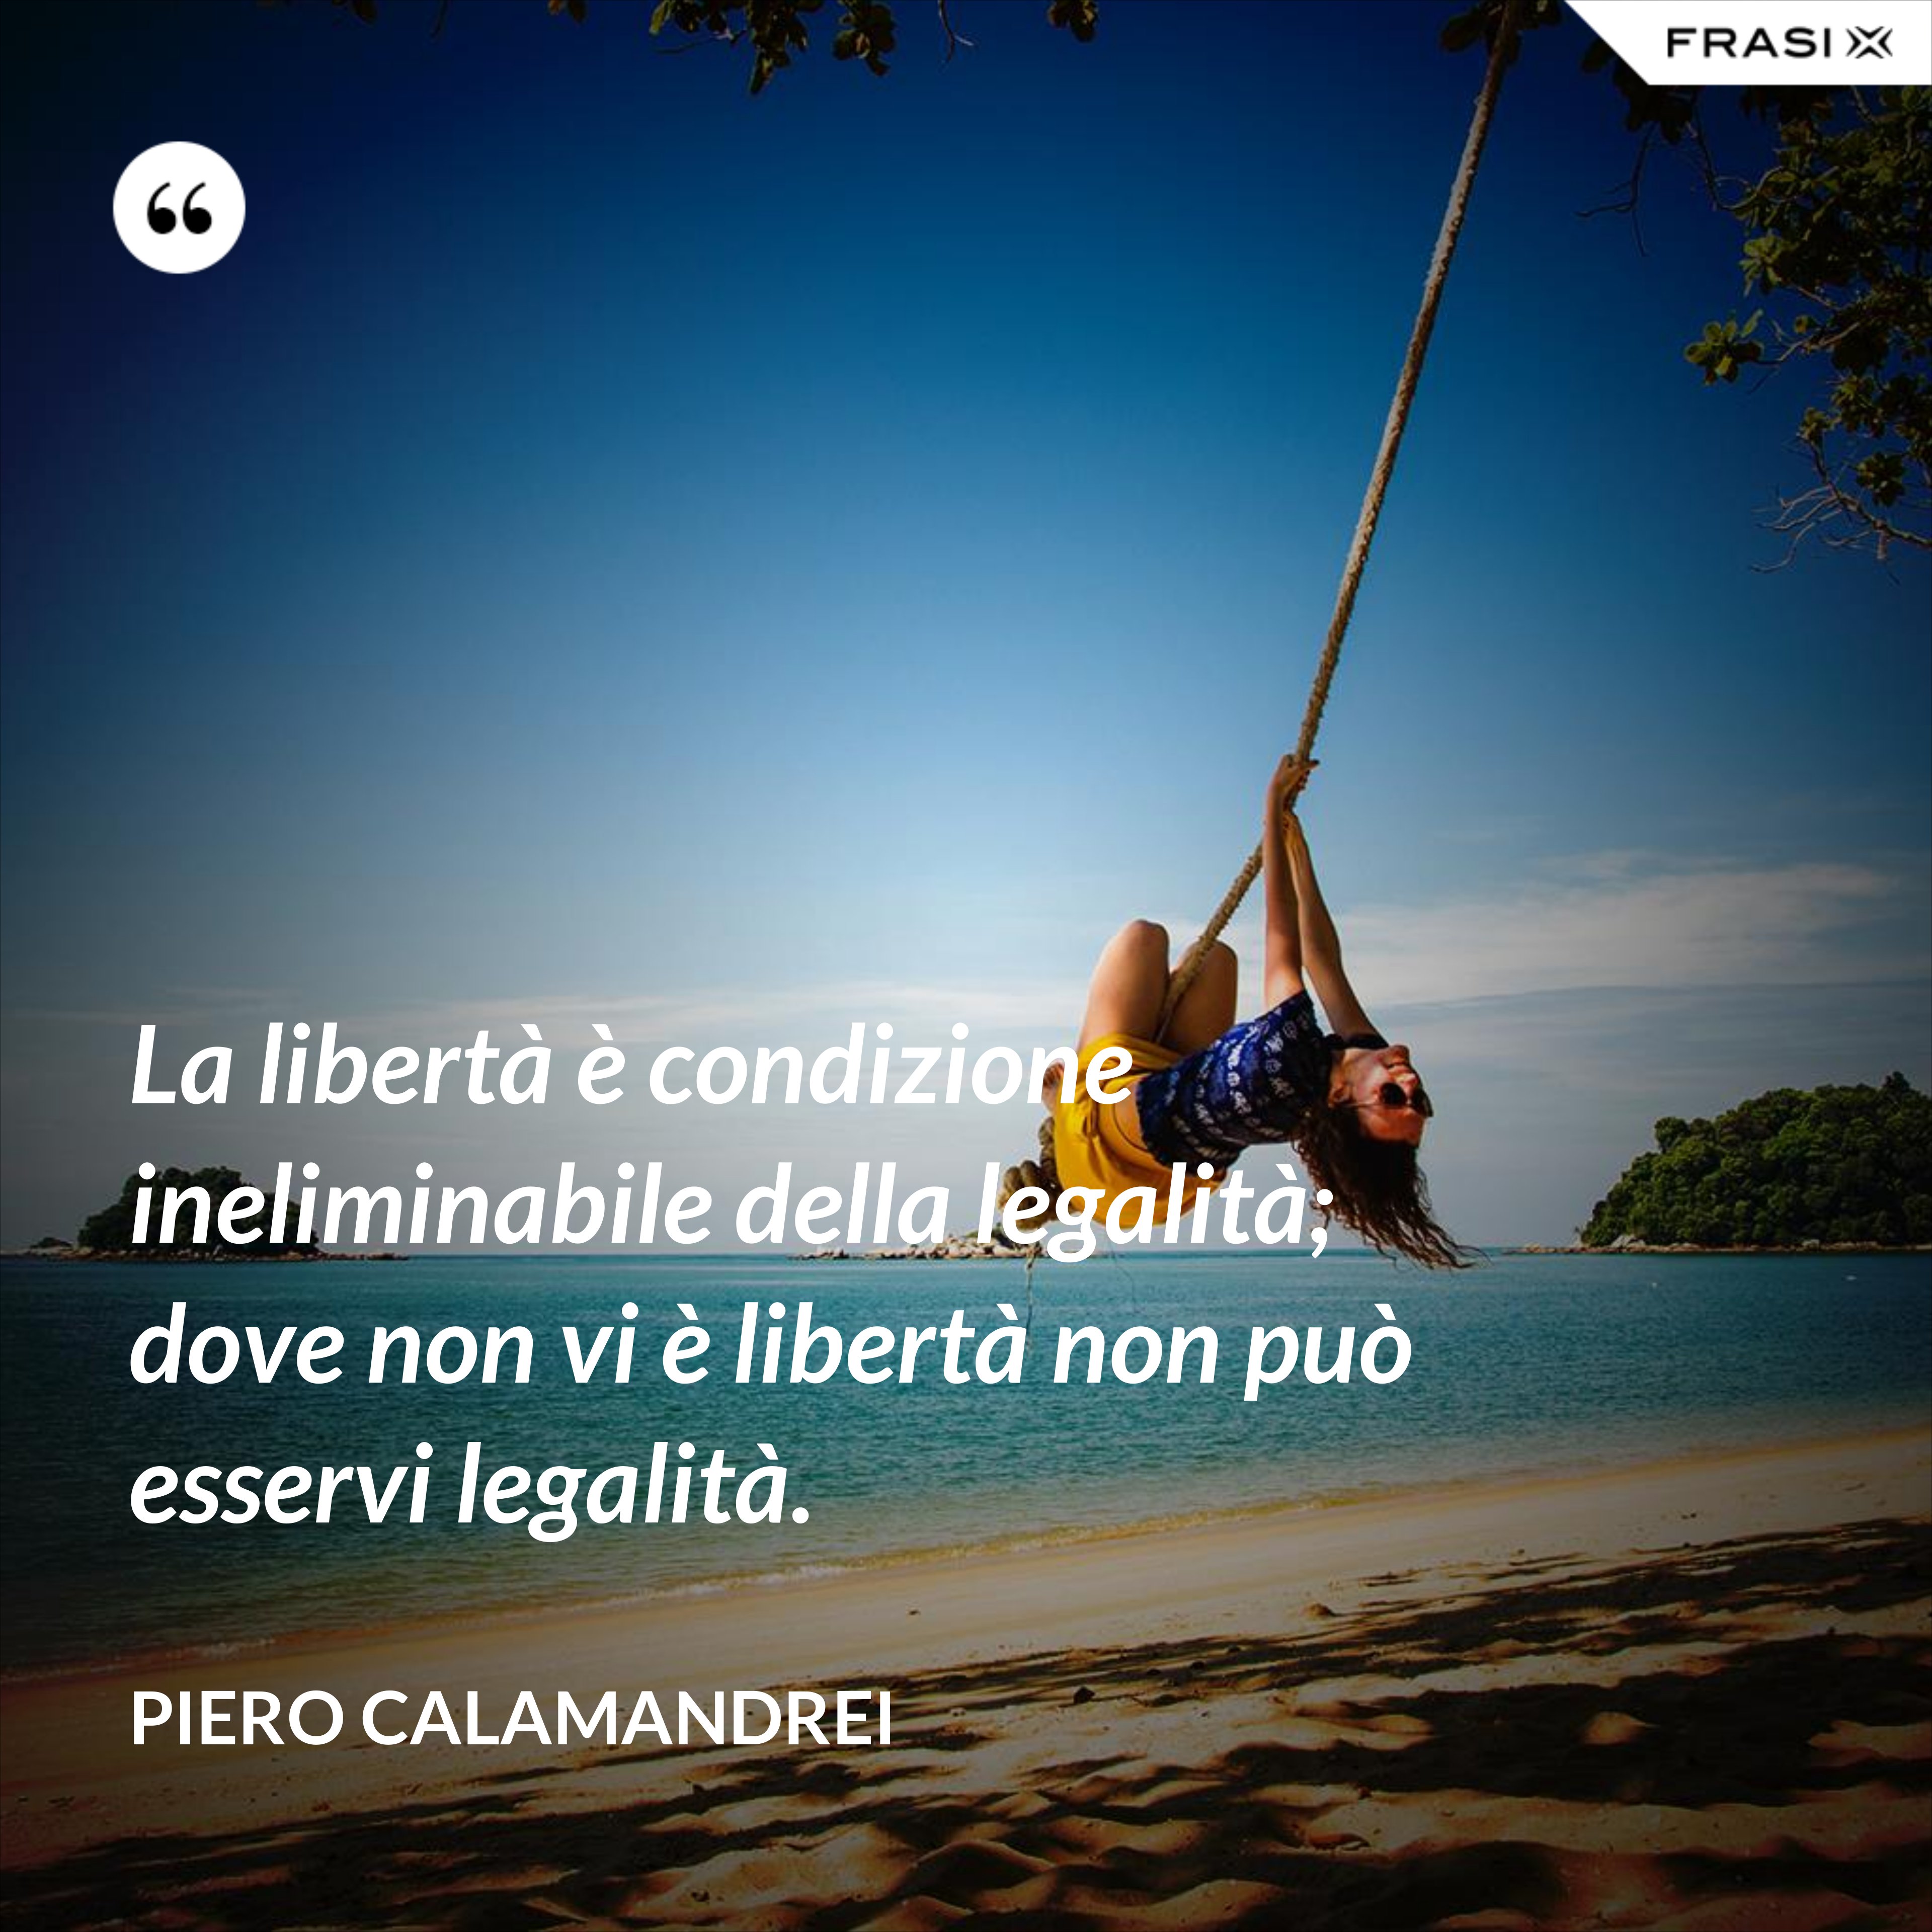 La libertà è condizione ineliminabile della legalità; dove non vi è libertà non può esservi legalità. - Piero Calamandrei